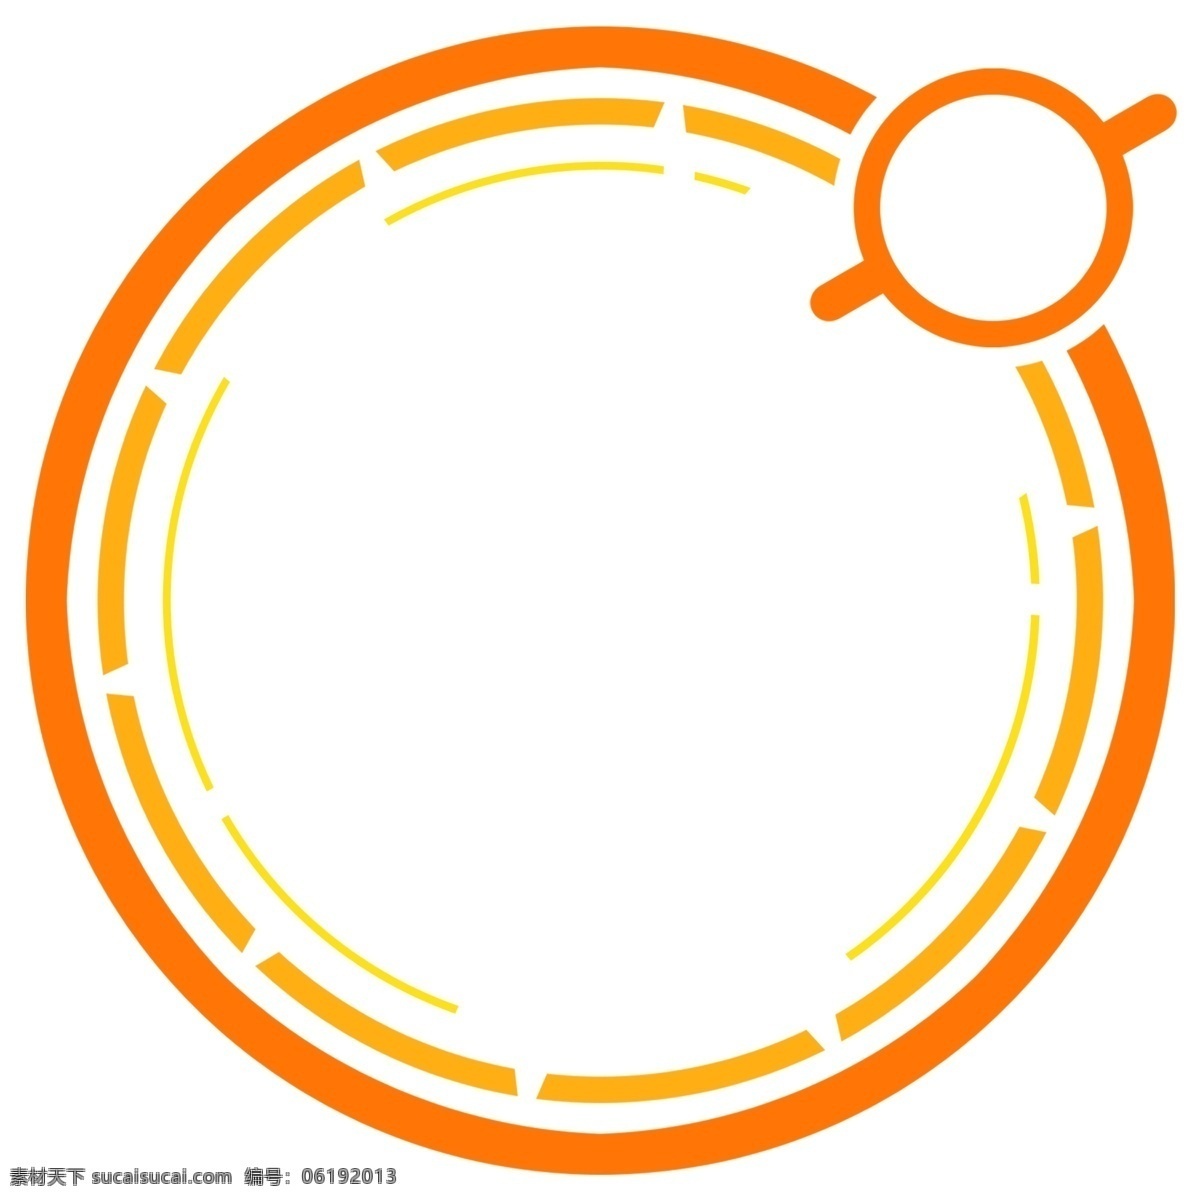 科技 感 橙色 圆环 边框 橘黄色 放大镜 科技感边框